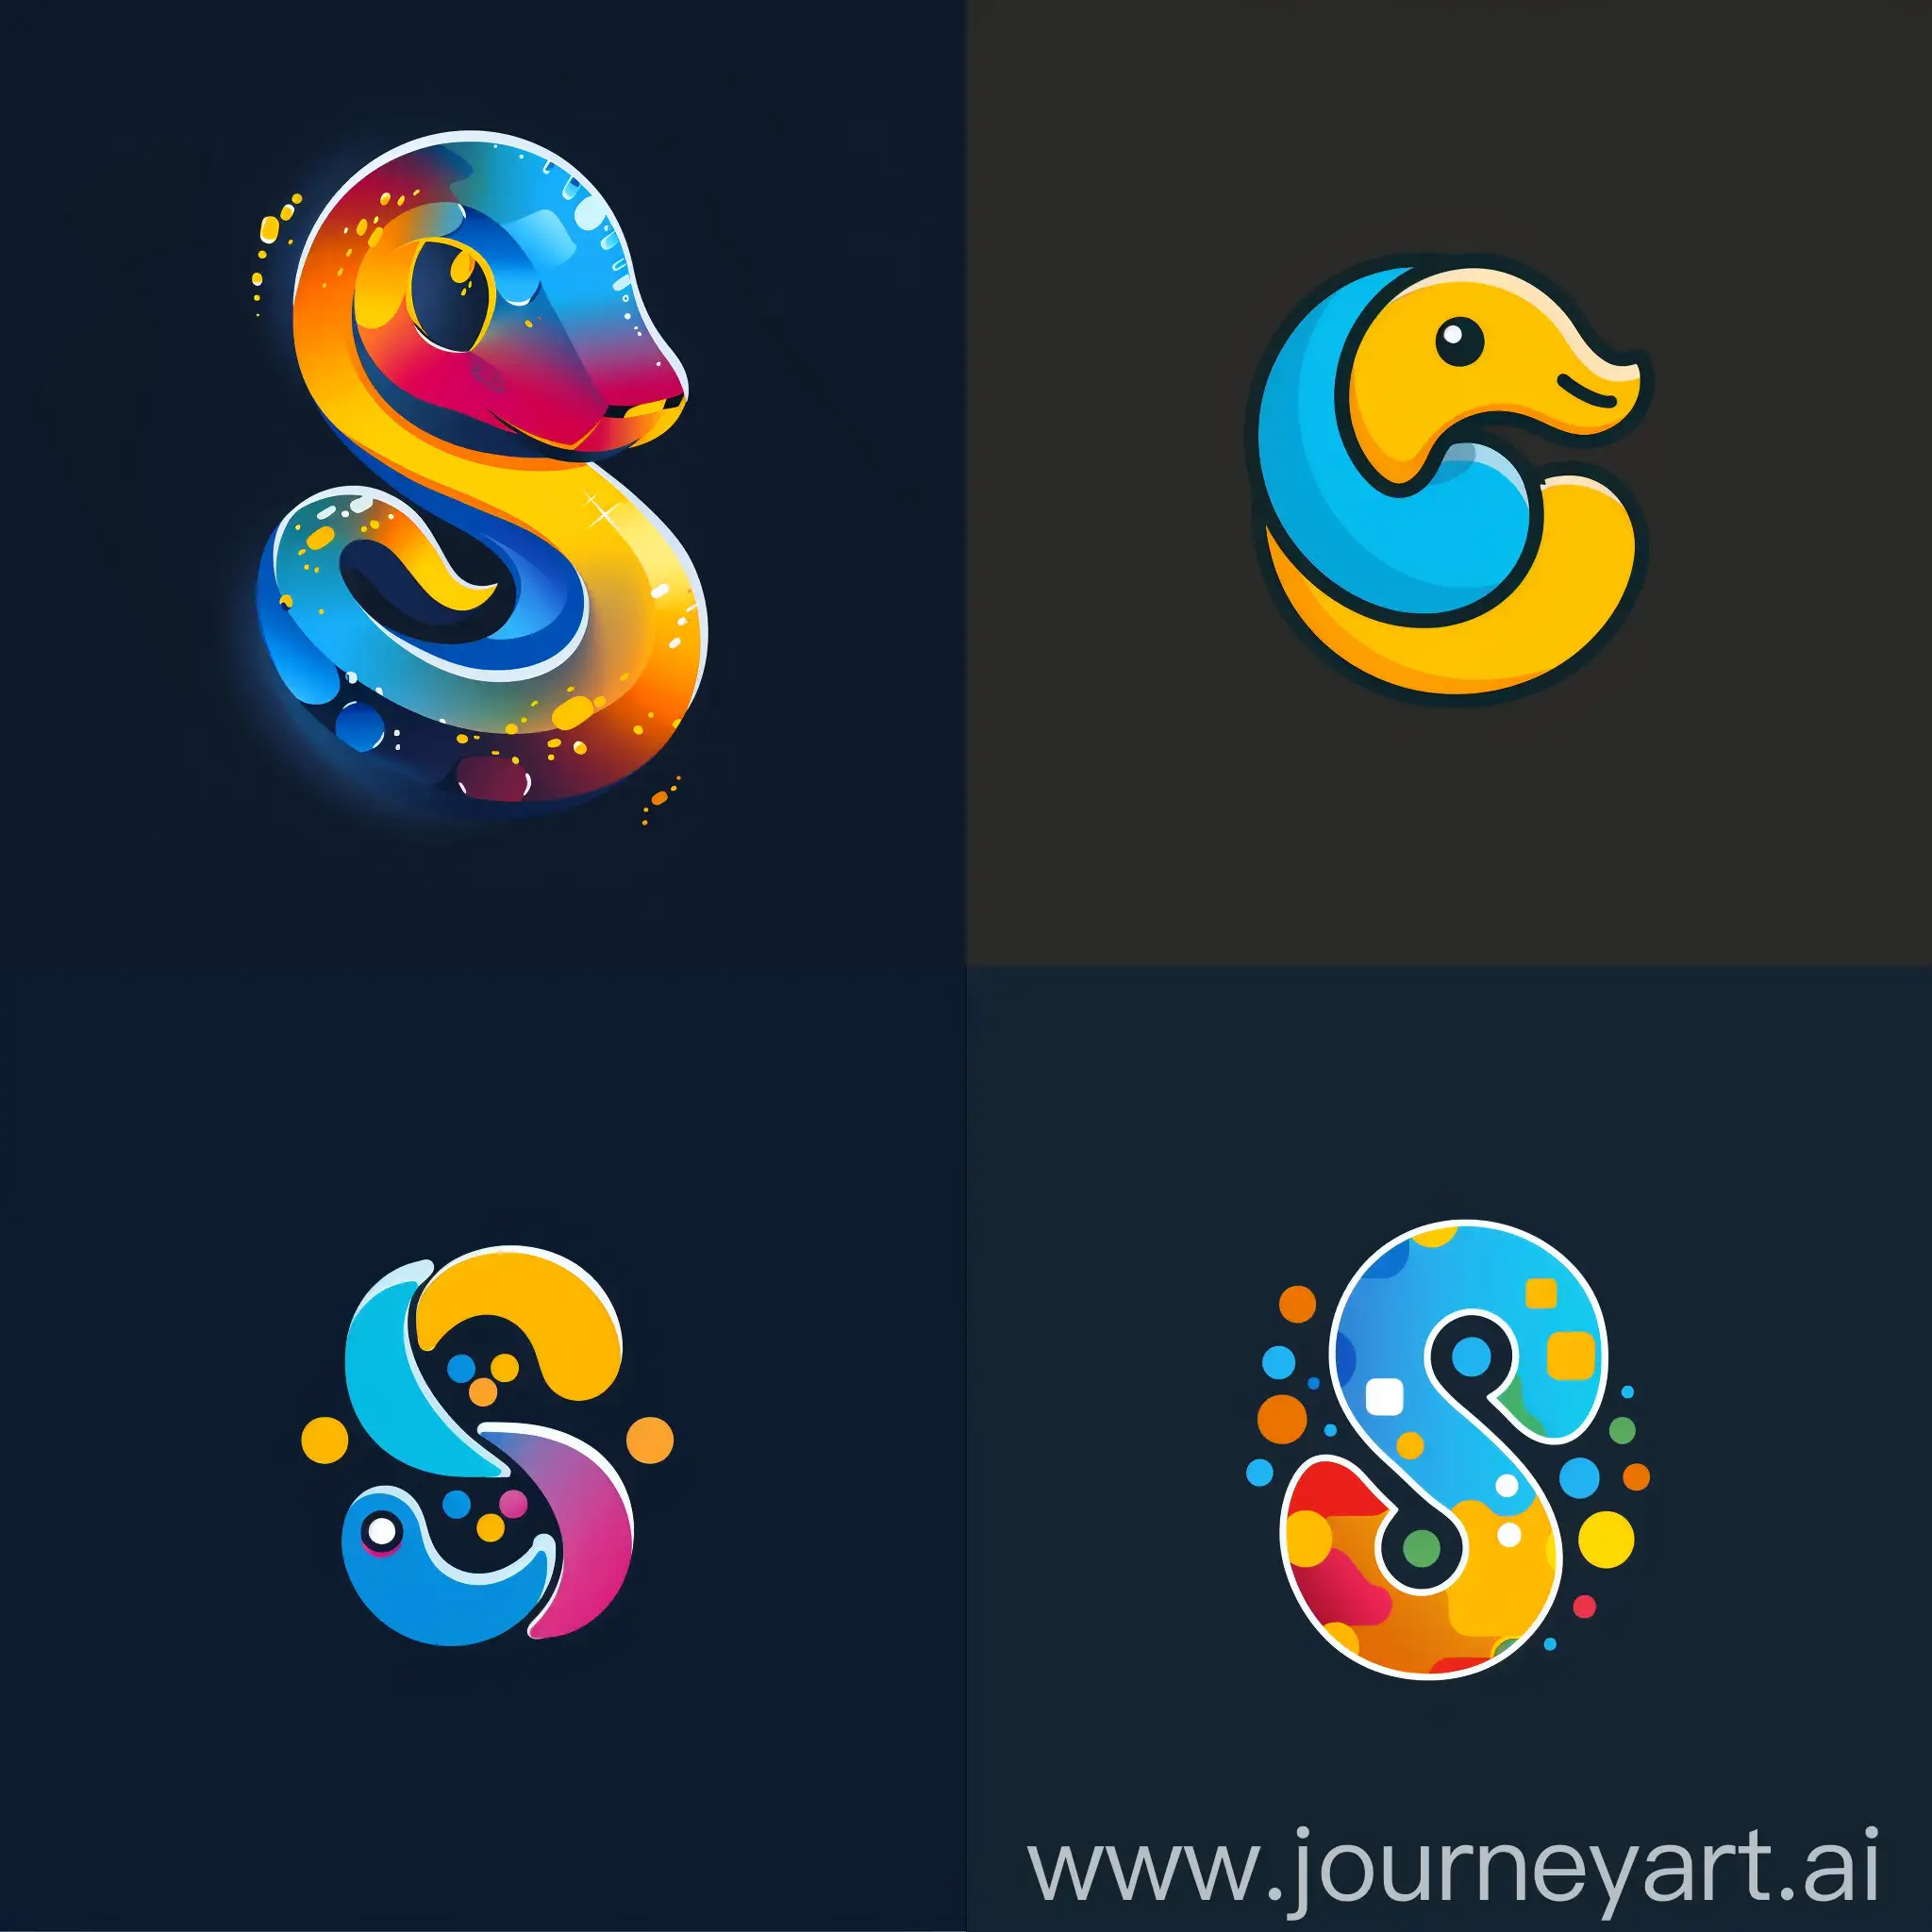 Создай оригинальный логотип для телеграм канала посвященного програмированию на python